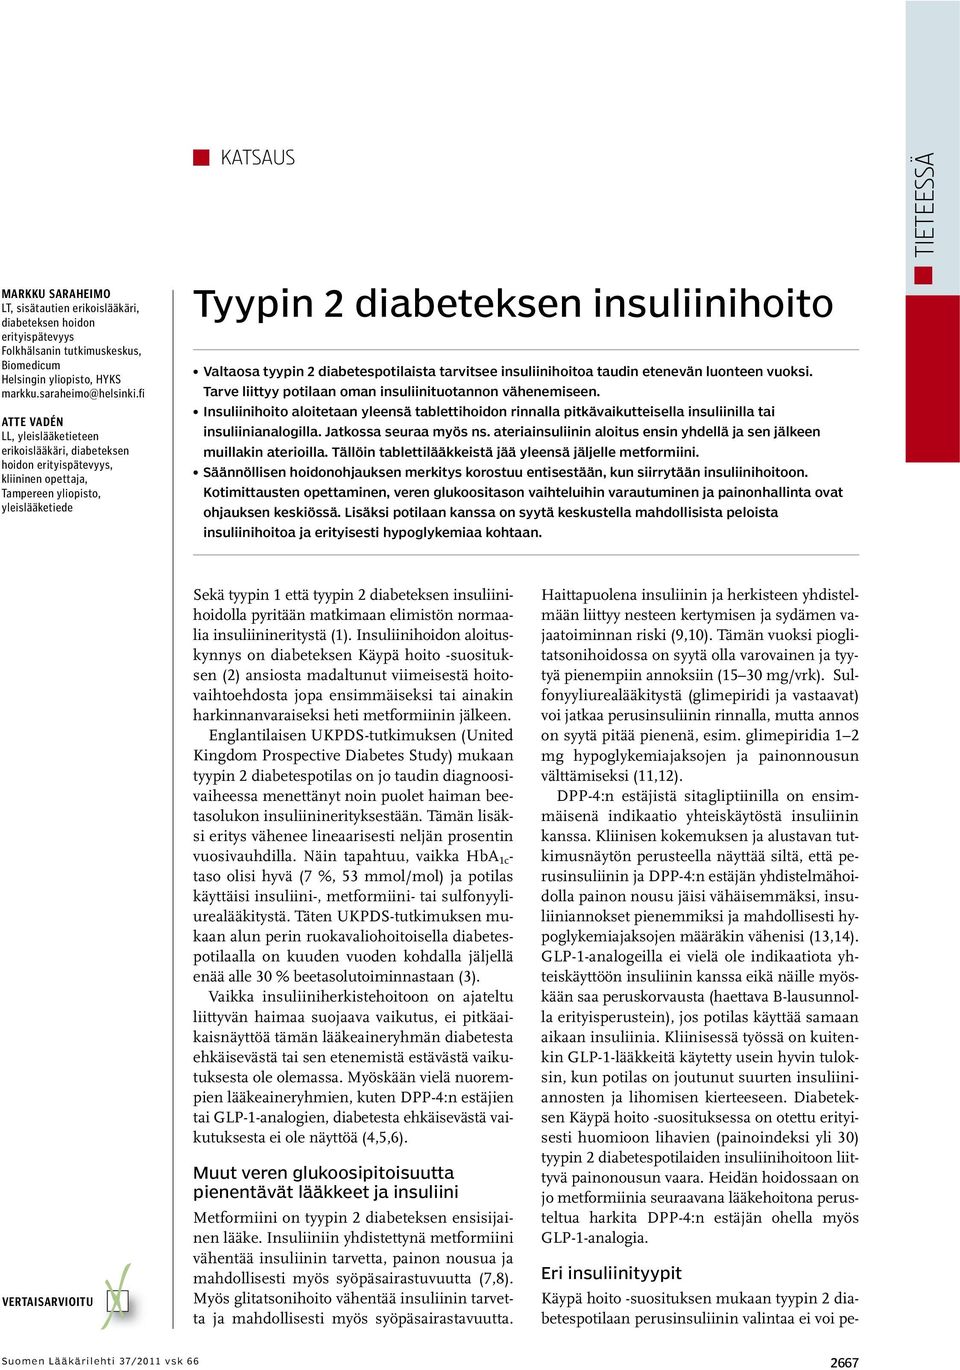 diabetespotilaista tarvitsee insuliinihoitoa taudin etenevän luonteen vuoksi. Tarve liittyy potilaan oman insuliinituotannon vähenemiseen.